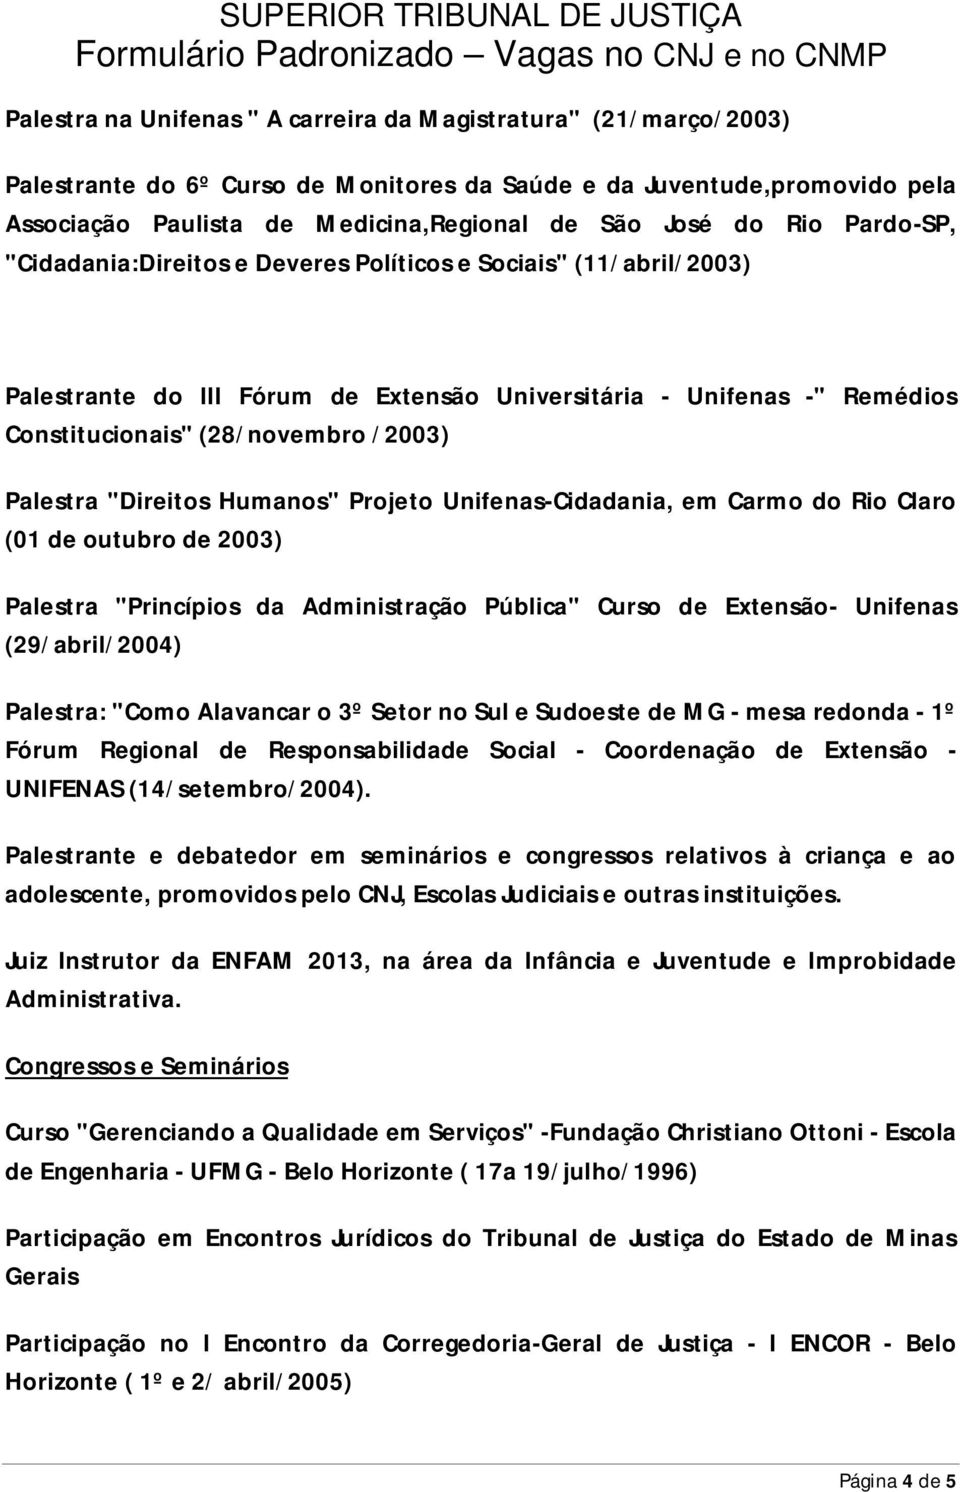 Palestra "Direitos Humanos" Projeto Unifenas-Cidadania, em Carmo do Rio Claro (01 de outubro de 2003) Palestra "Princípios da Administração Pública" Curso de Extensão- Unifenas (29/abril/2004)